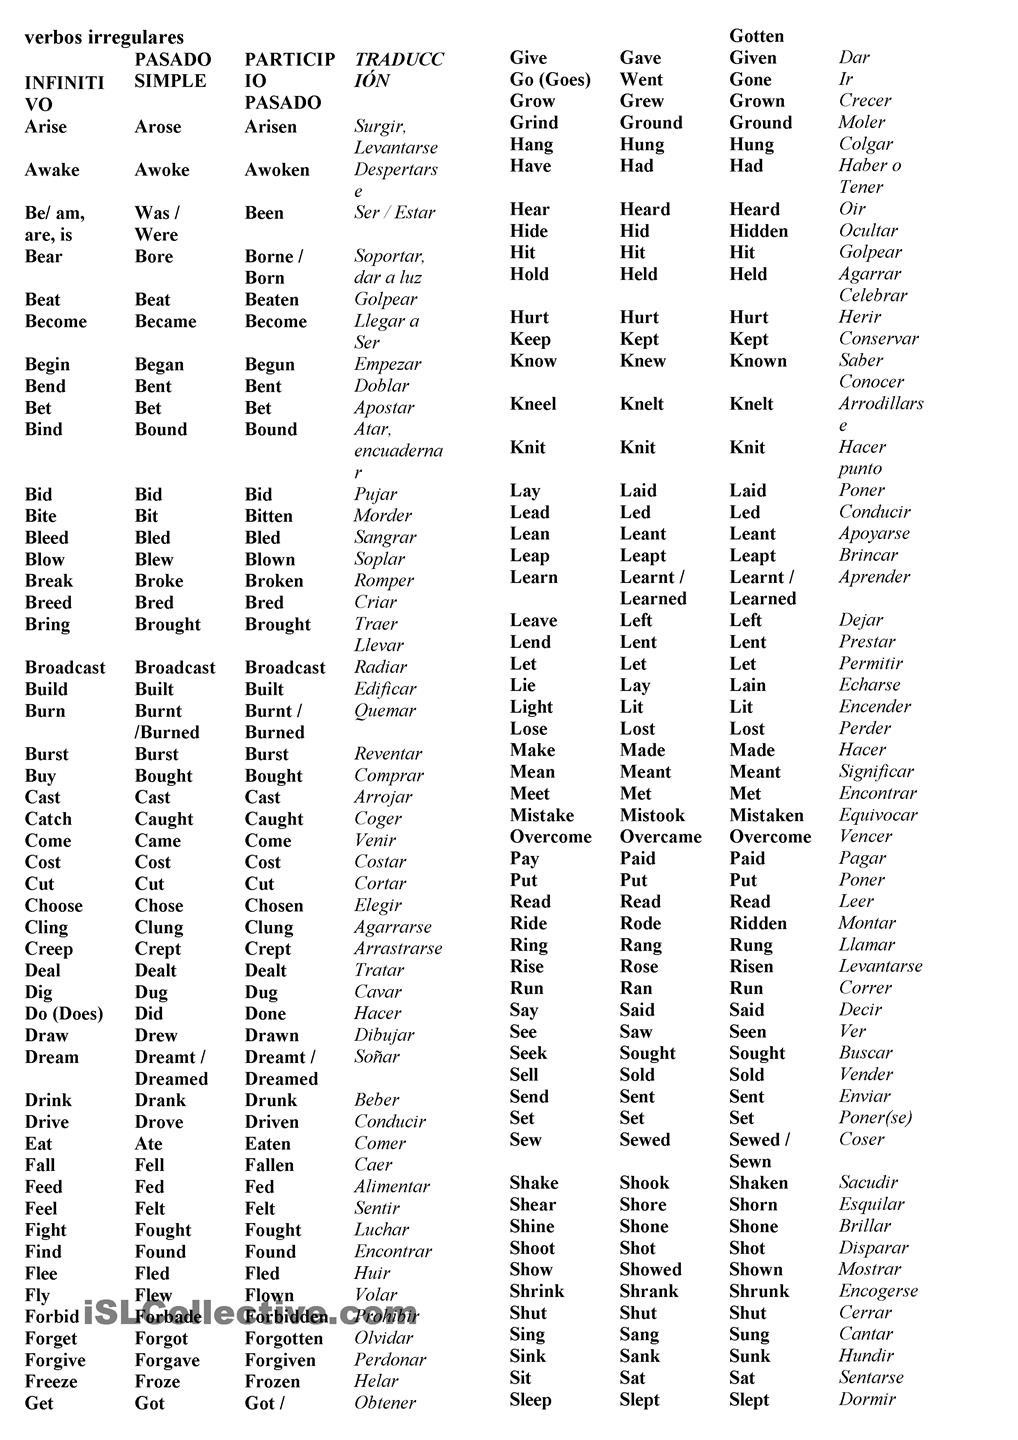 lista-de-verbos-irregulares